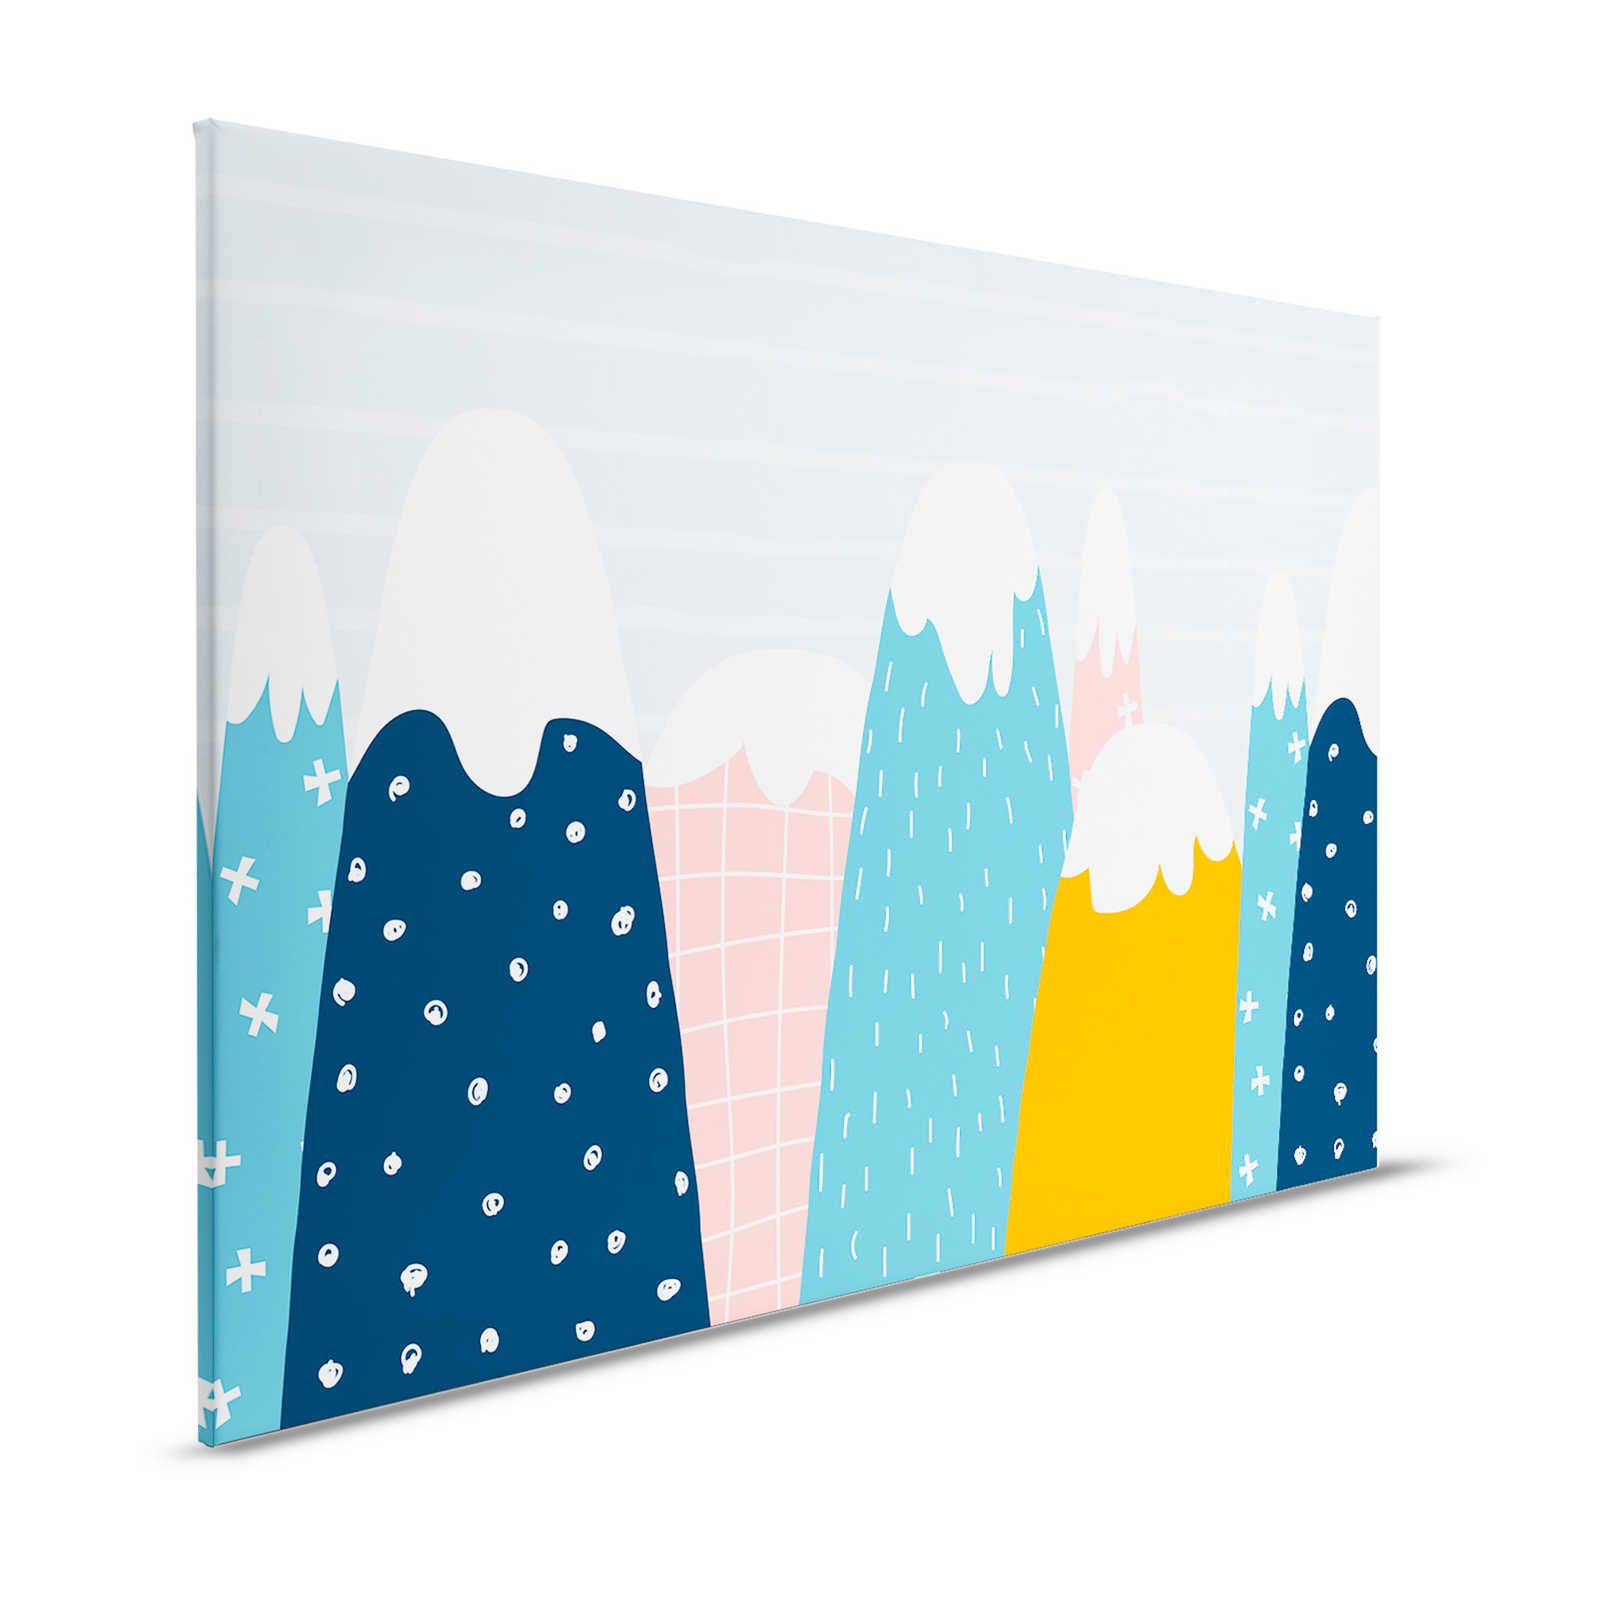 Lienzo con colinas nevadas en estilo pintado - 120 cm x 80 cm
